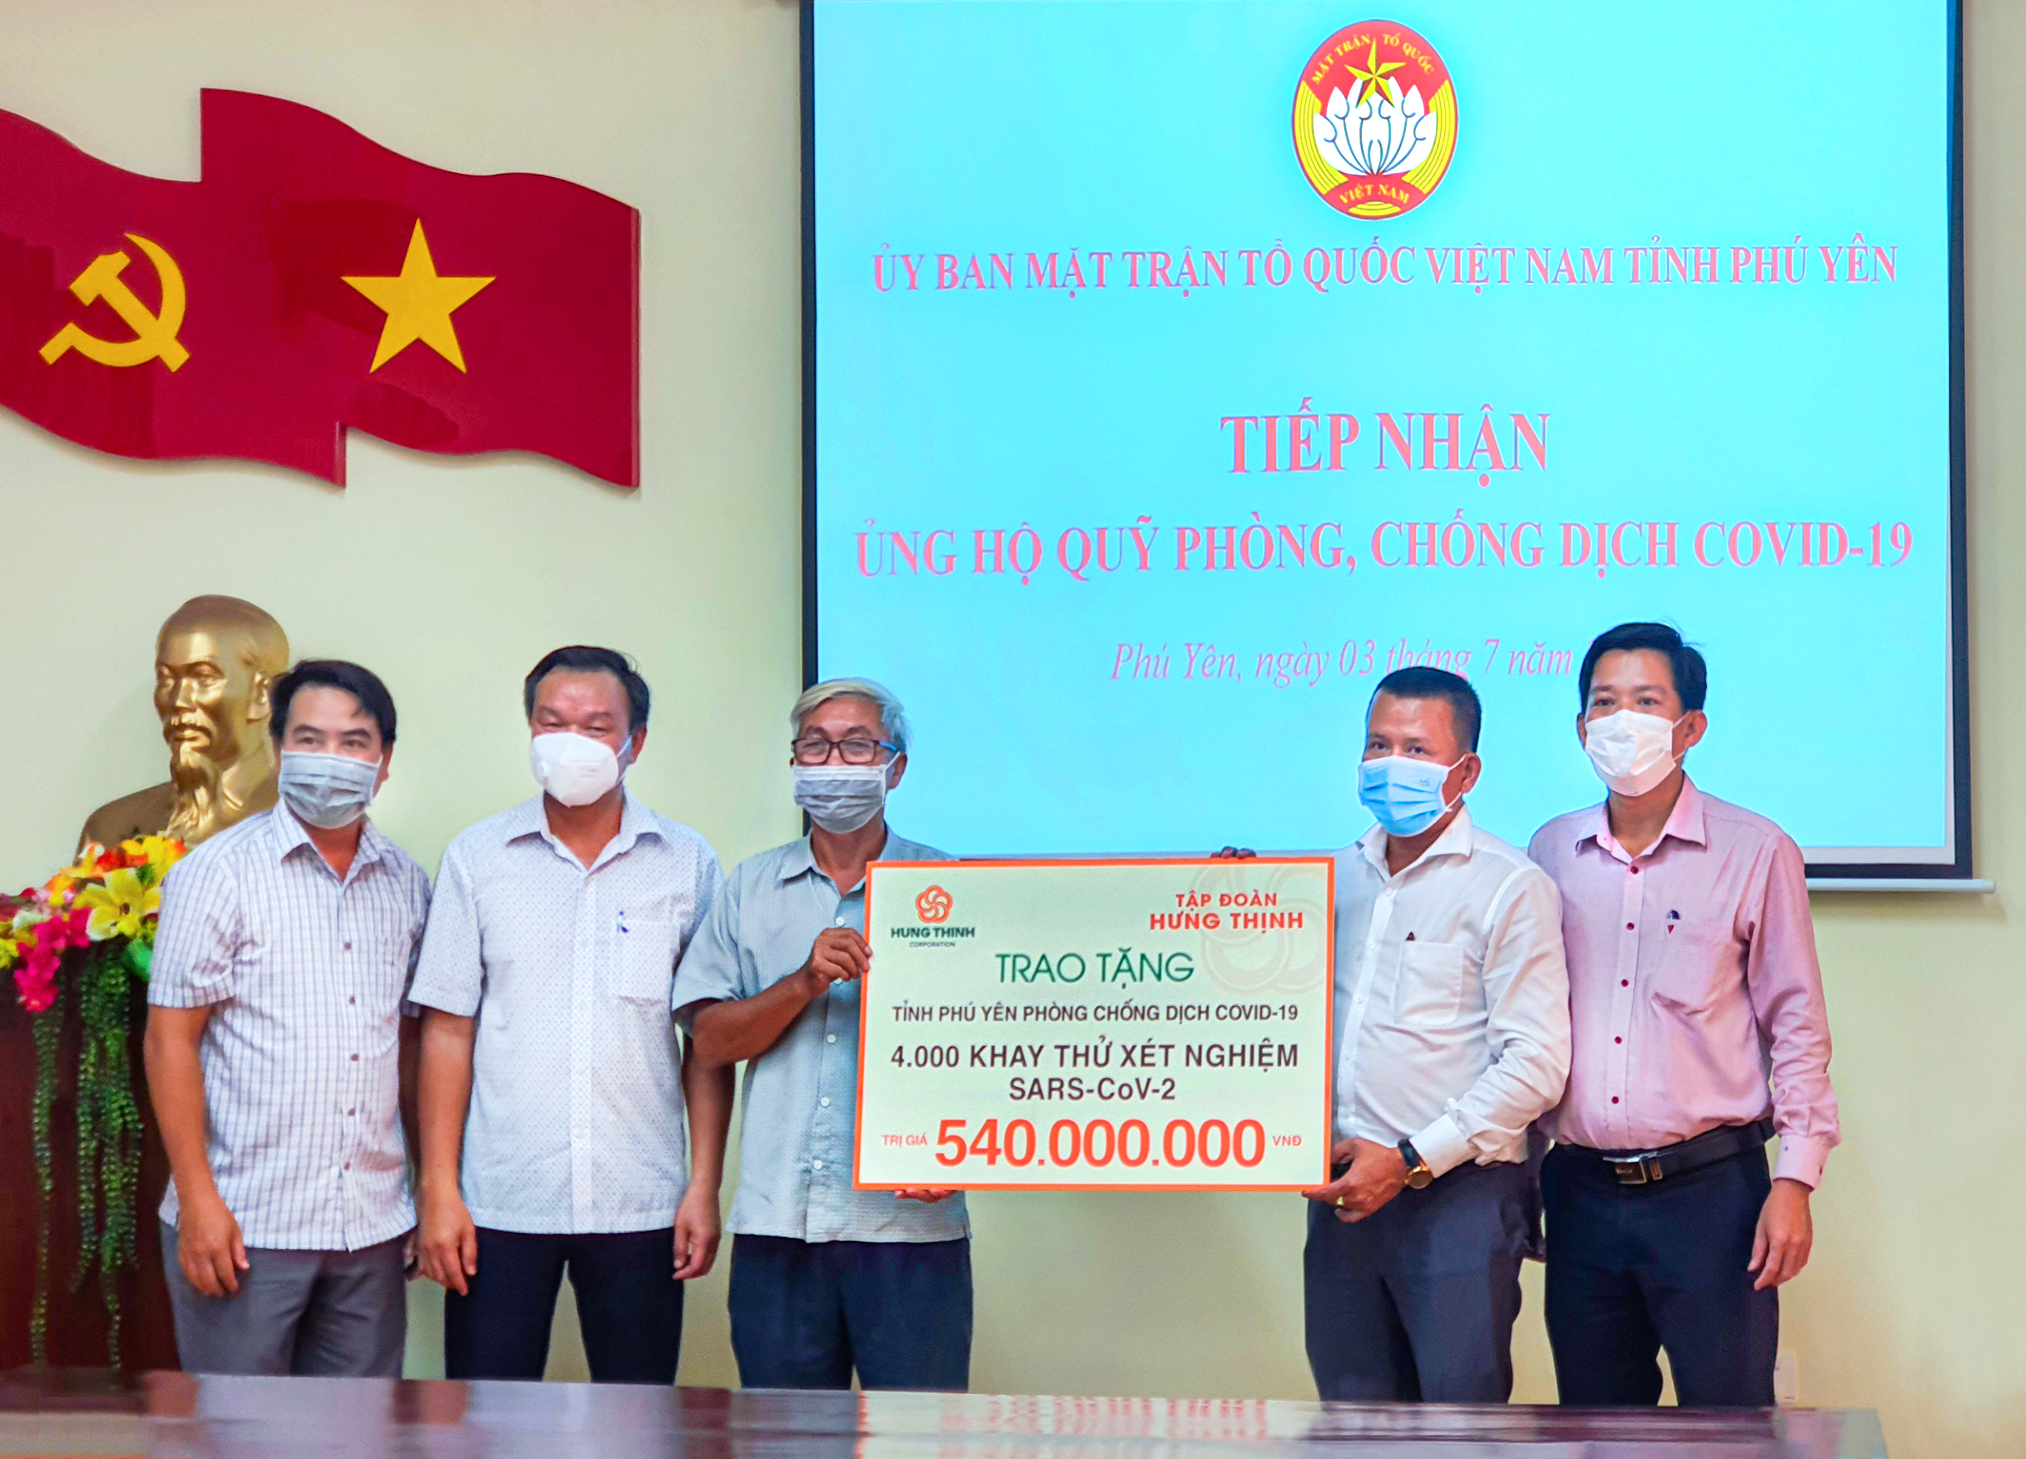 Tập đoàn Hưng Thịnh chung tay cùng tỉnh Phú Yên phòng, chống dịch Covid-19